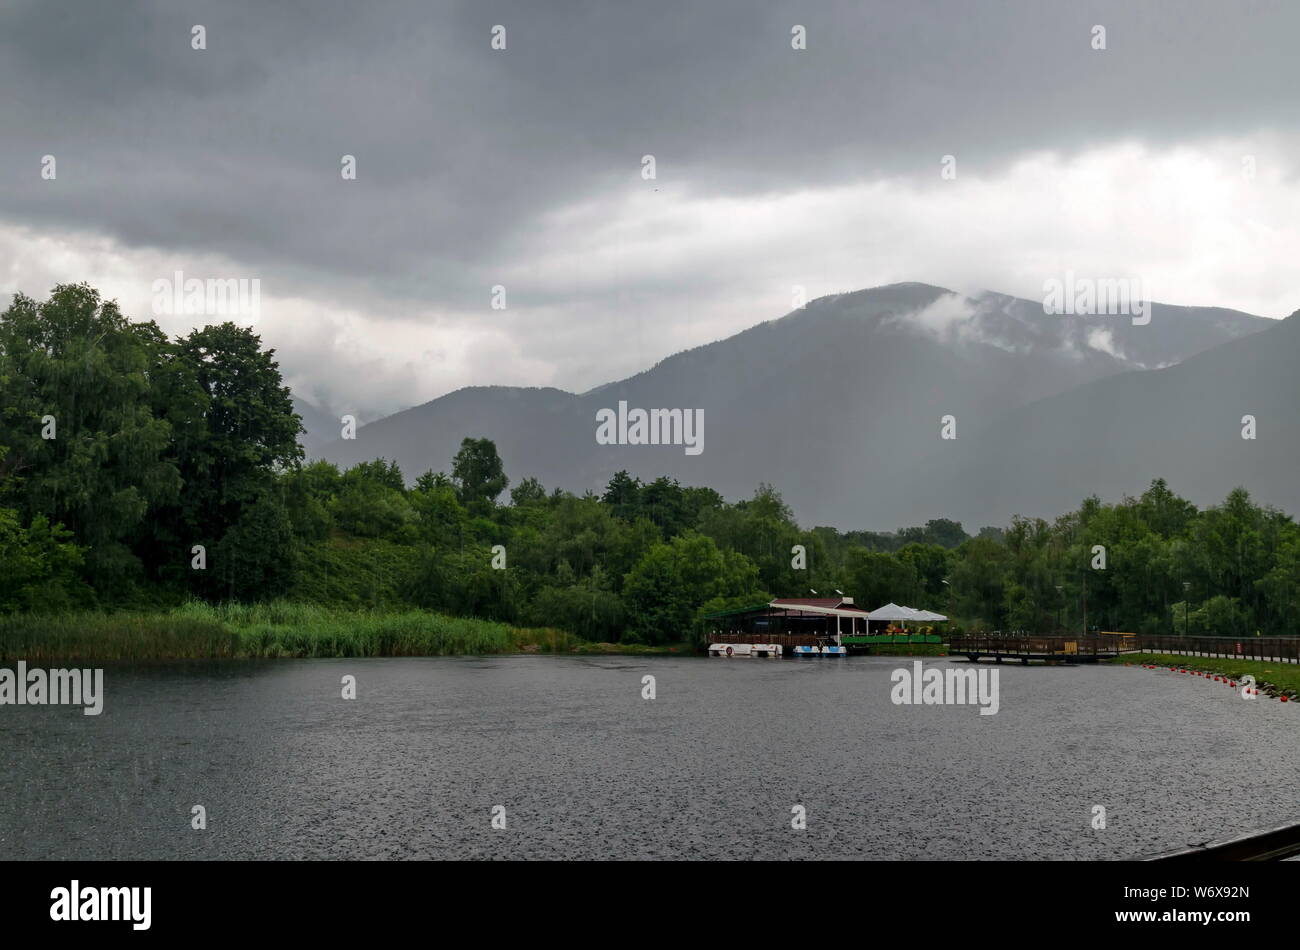 Ein Blick auf den künstlichen See mit Shelter und Boote an einem regnerischen Tag in rila Park in der Nähe der Stadt Sliven, Bulgarien Stockfoto